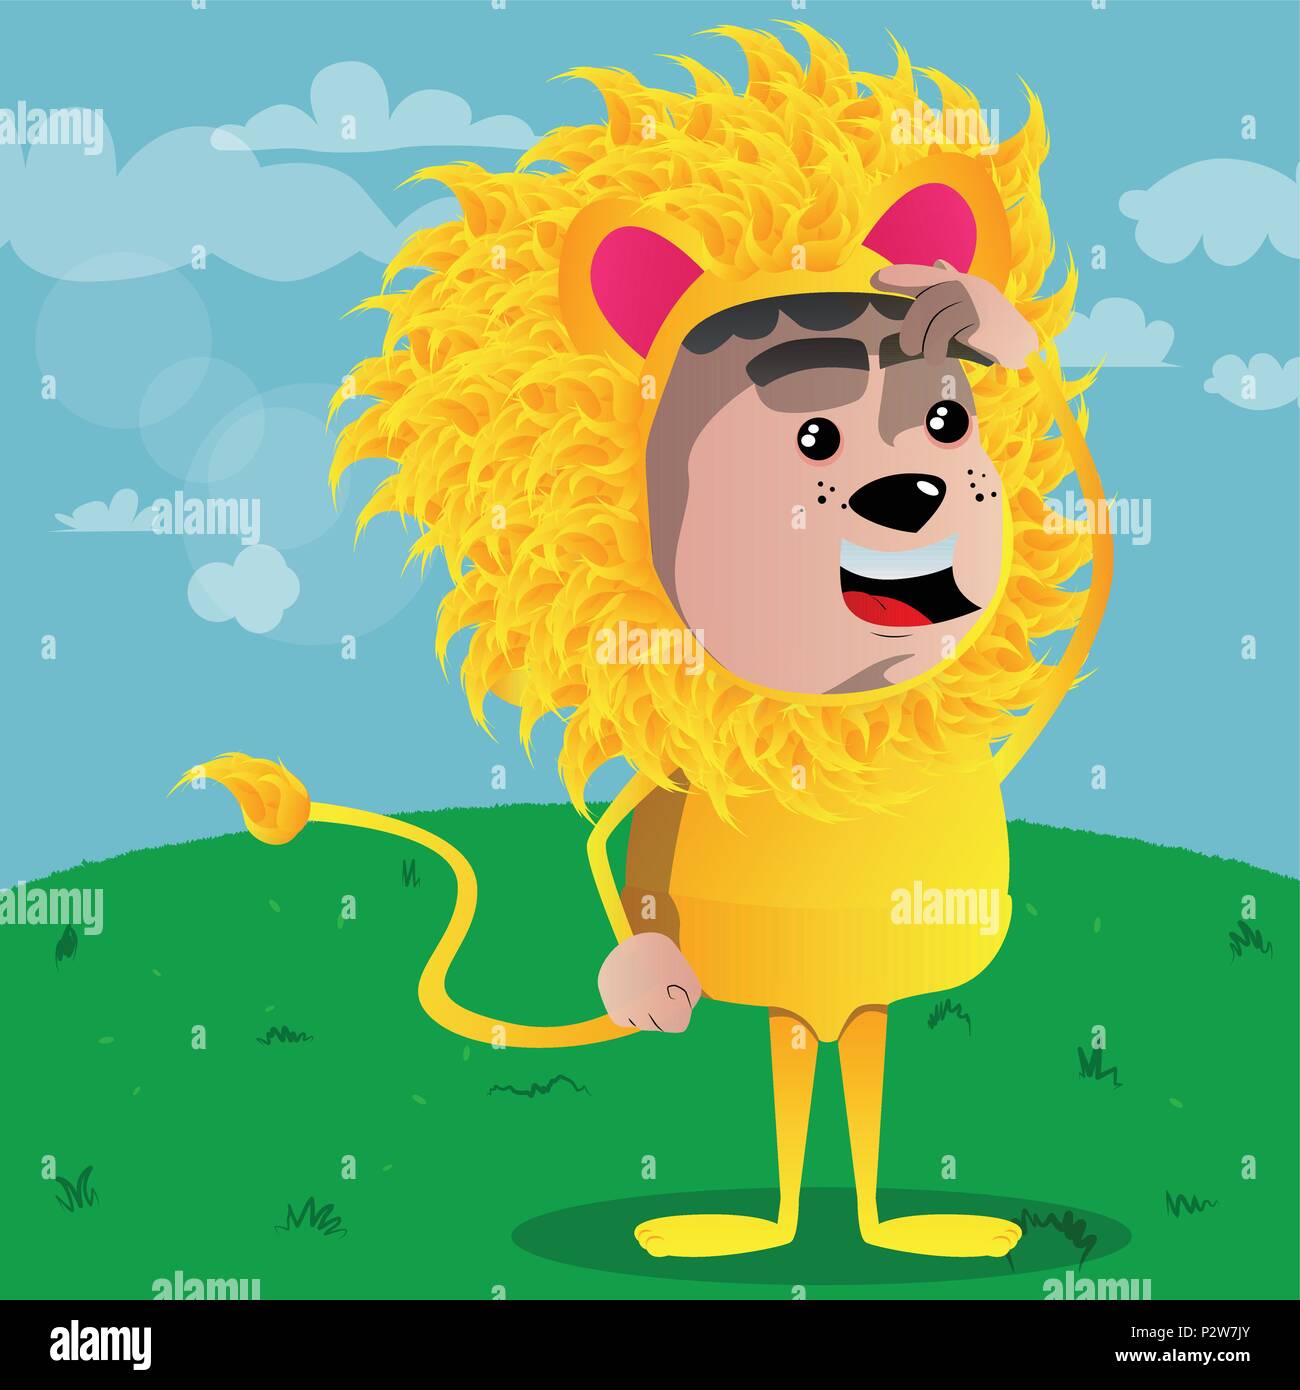 Junge verkleidet als Lion verwirrt. Vektor Zeichentrickfigur Abbildung. Stock Vektor